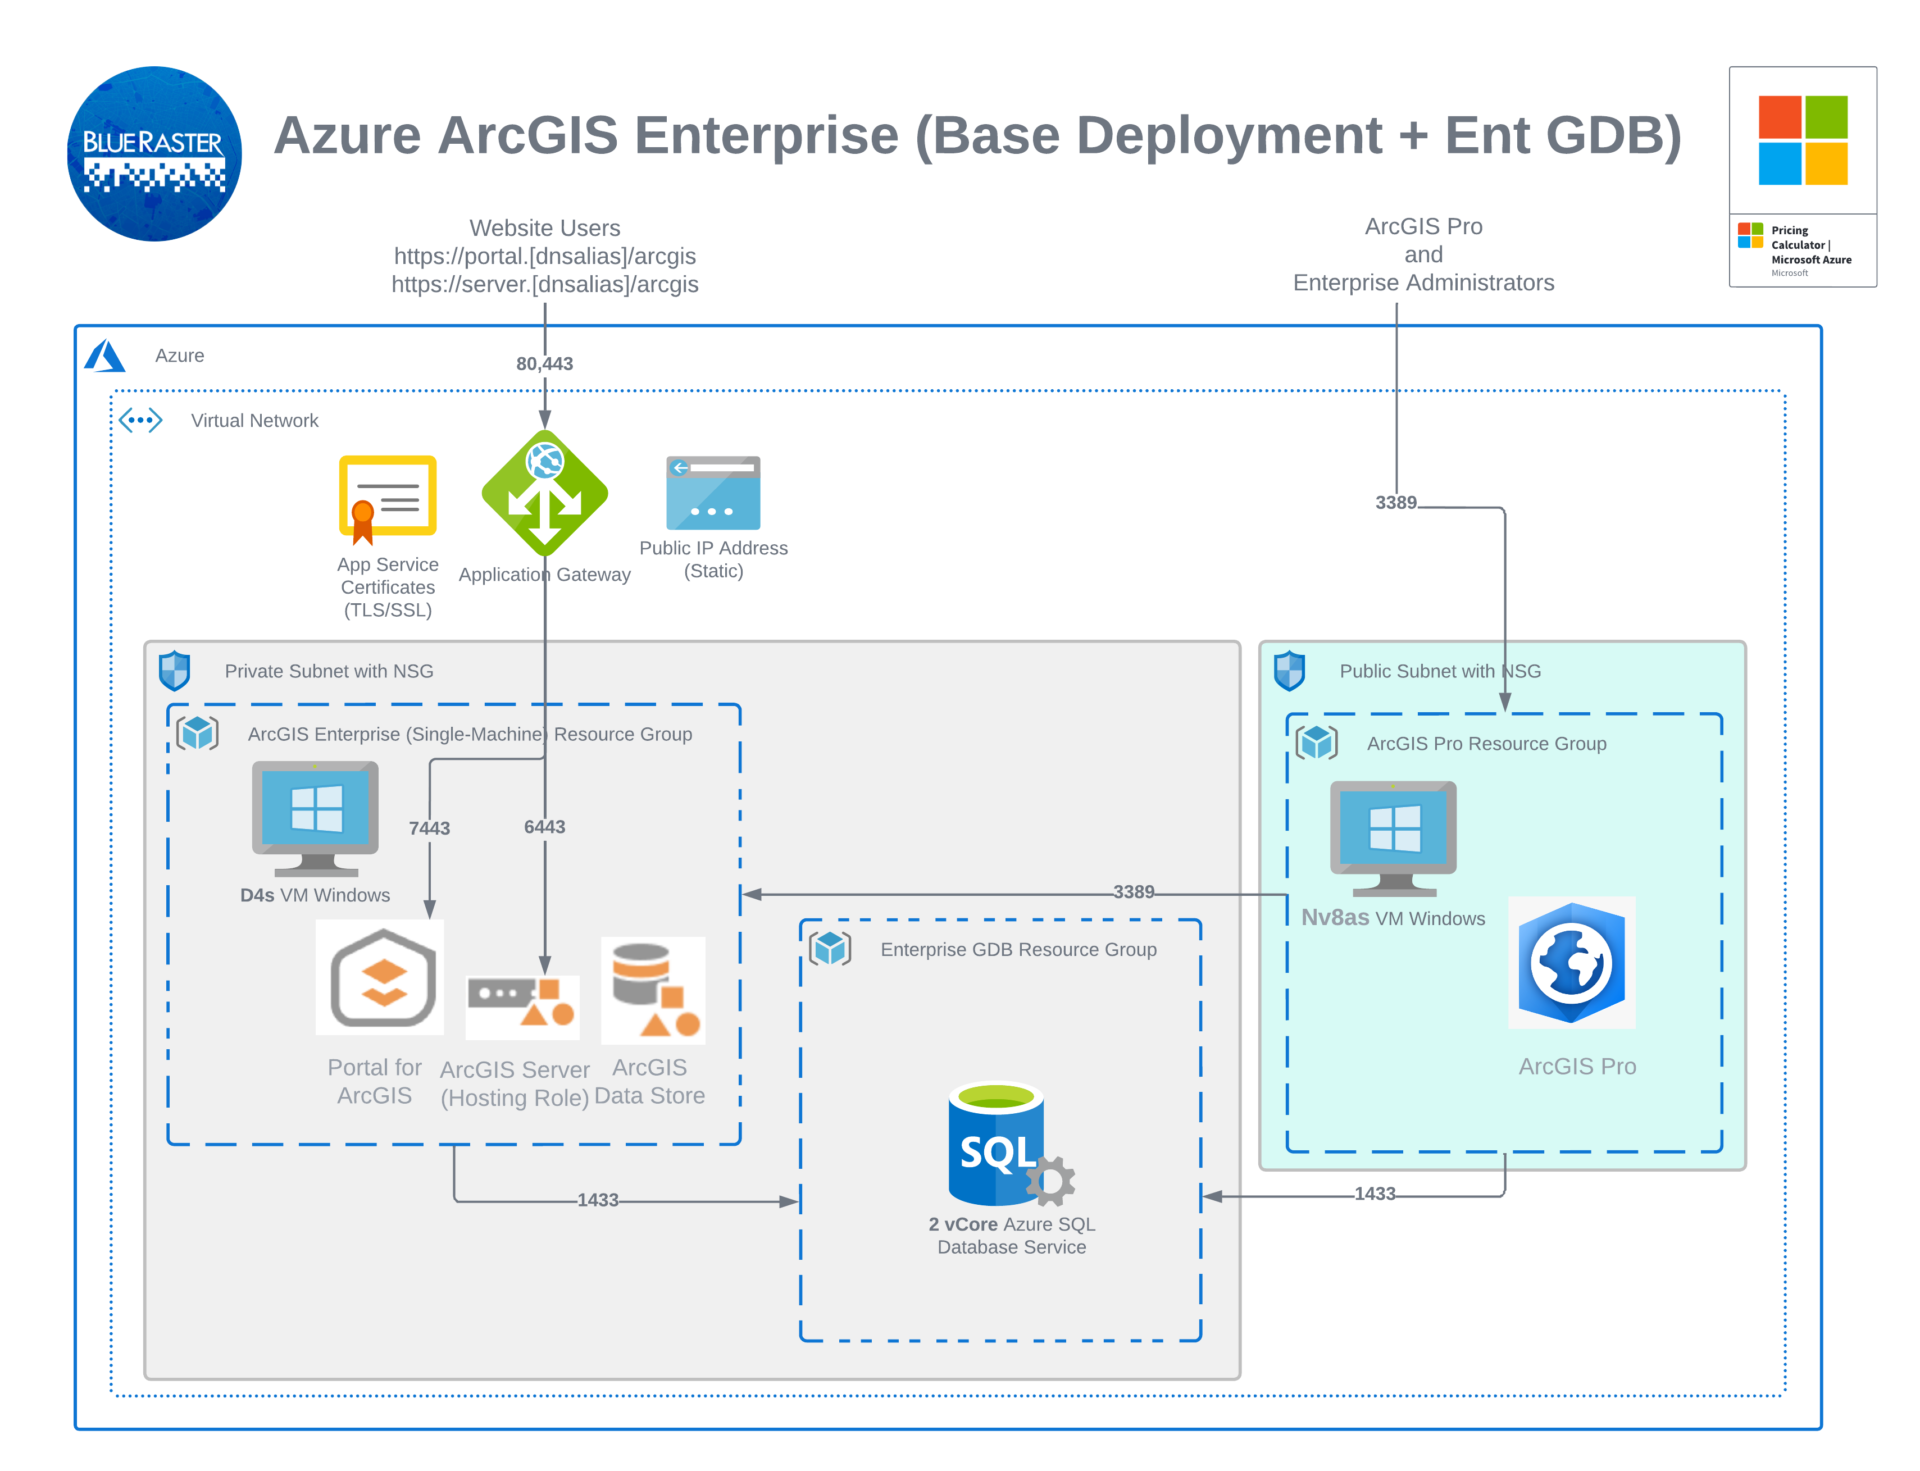 Azure ArcGIS Enterprise Implementation